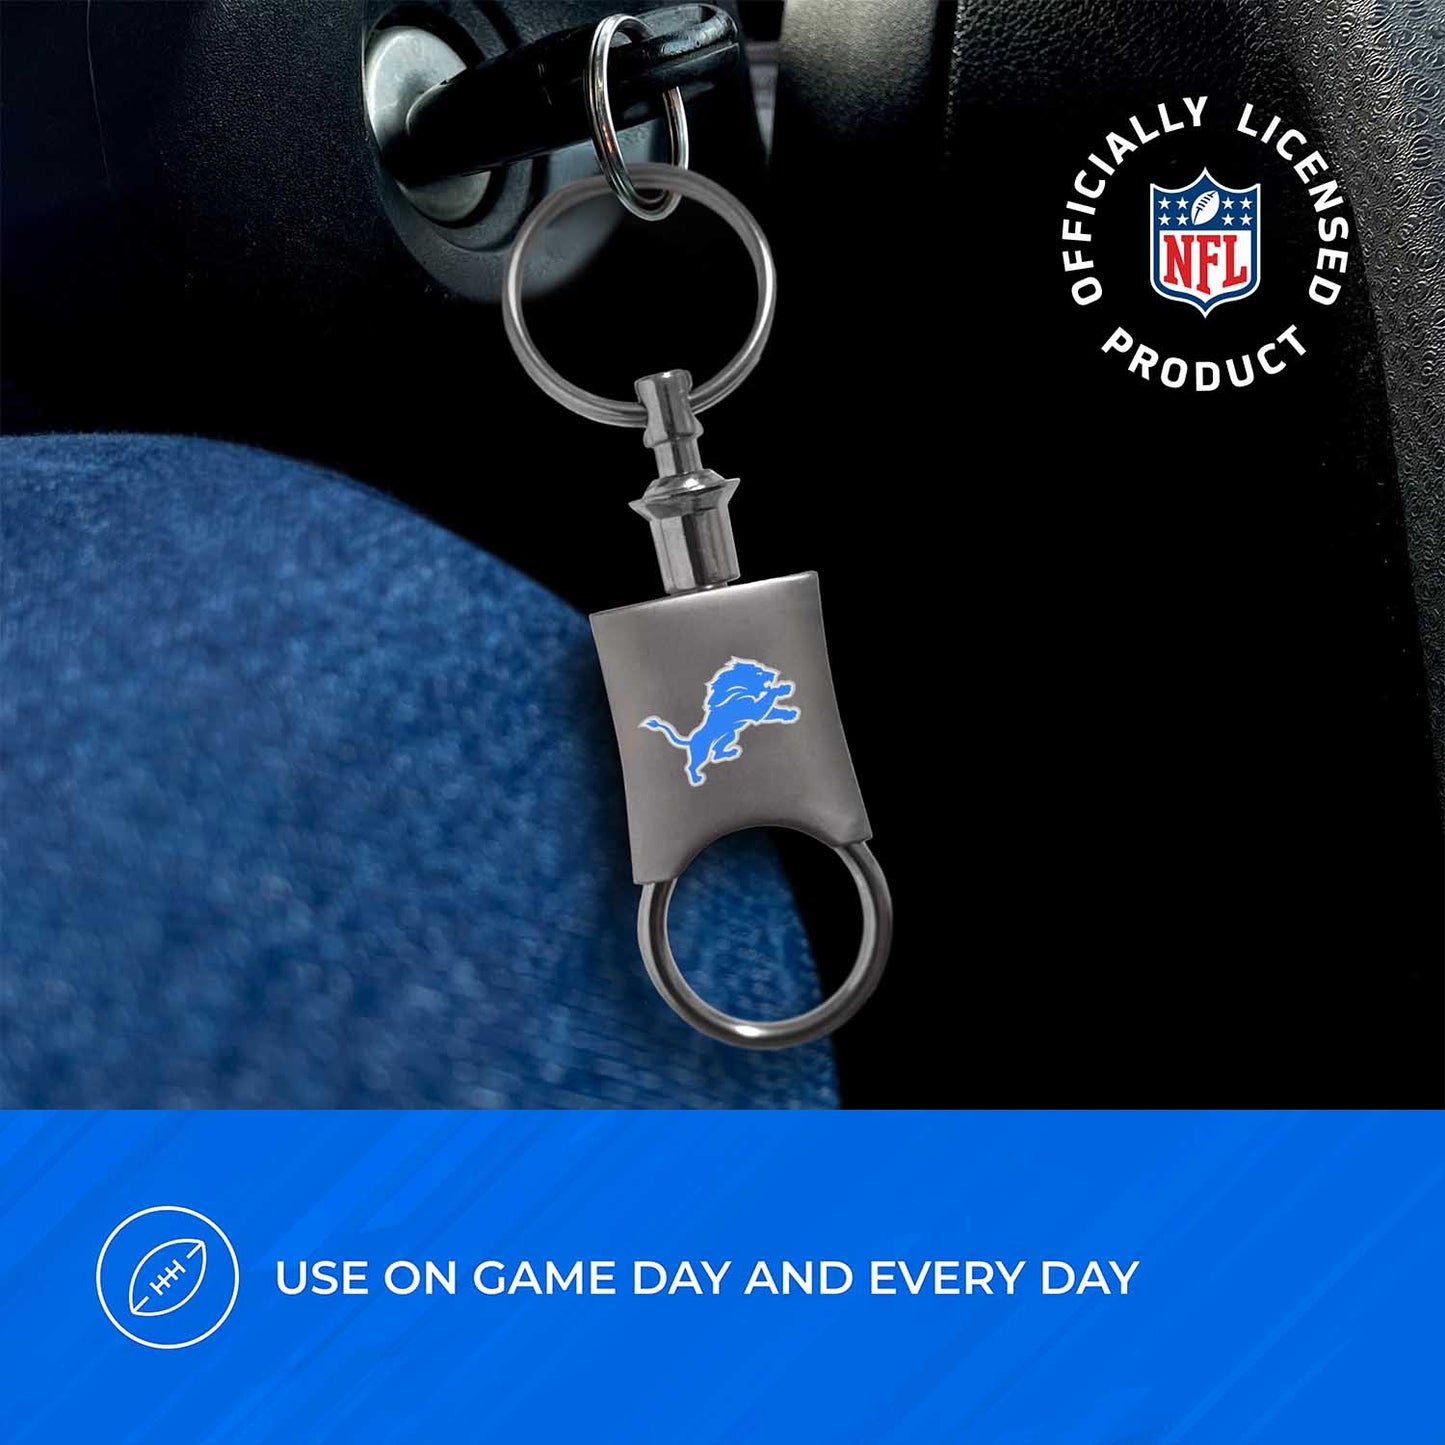 Detroit Lions NFL Team Logo Mens Bi Fold Wallet and Unisex Valet Keychain Bundle - Black